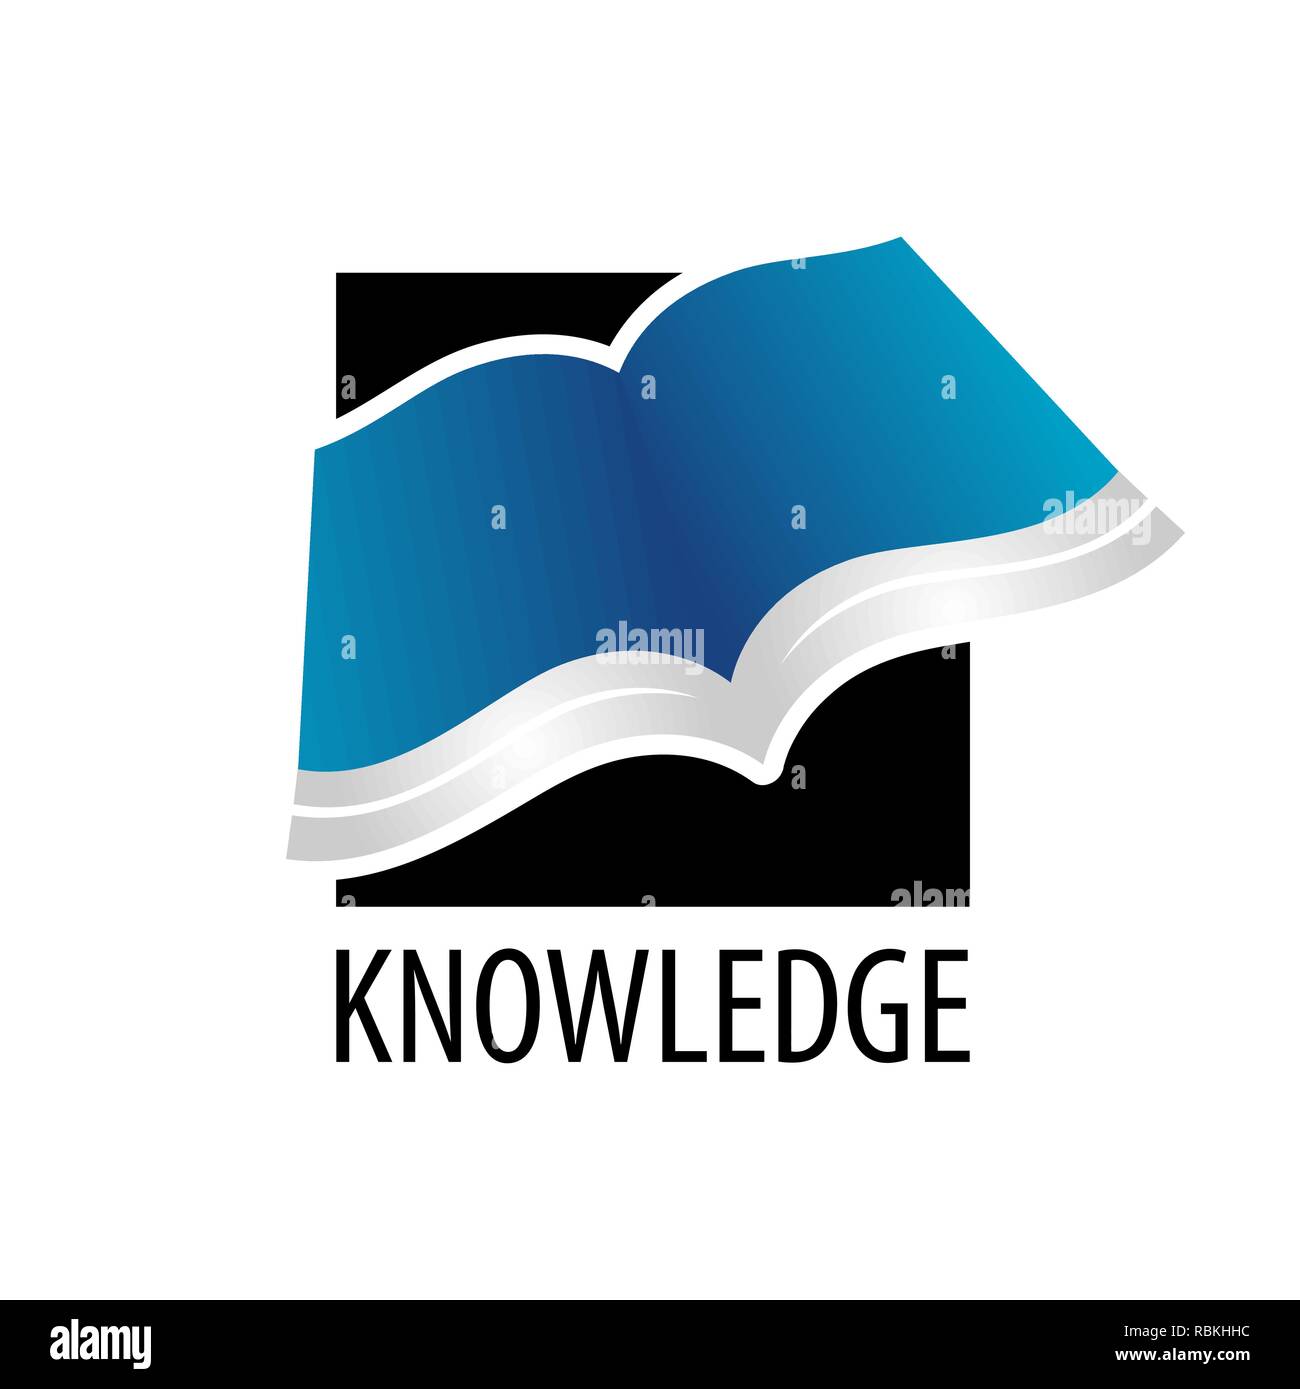 Knowledge. Square open book icon logo concept design template idea Stock Vector